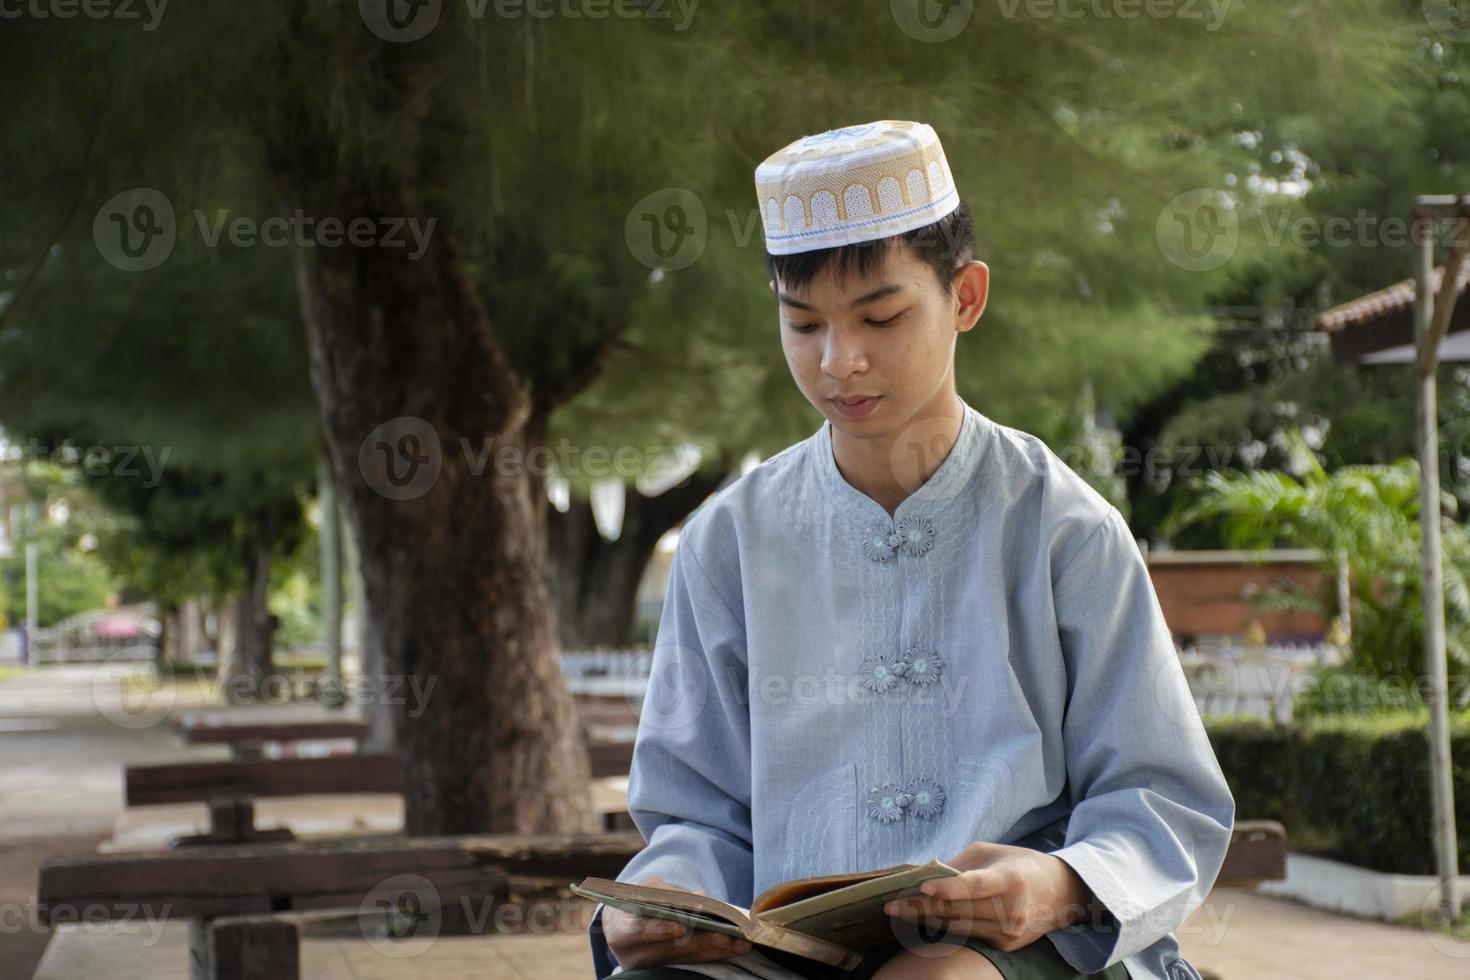 un joven musulmán asiático usa sombrero, se sienta en el parque escolar y lee su libro en su tiempo libre antes de volver a casa, enfoque suave y selectivo. foto